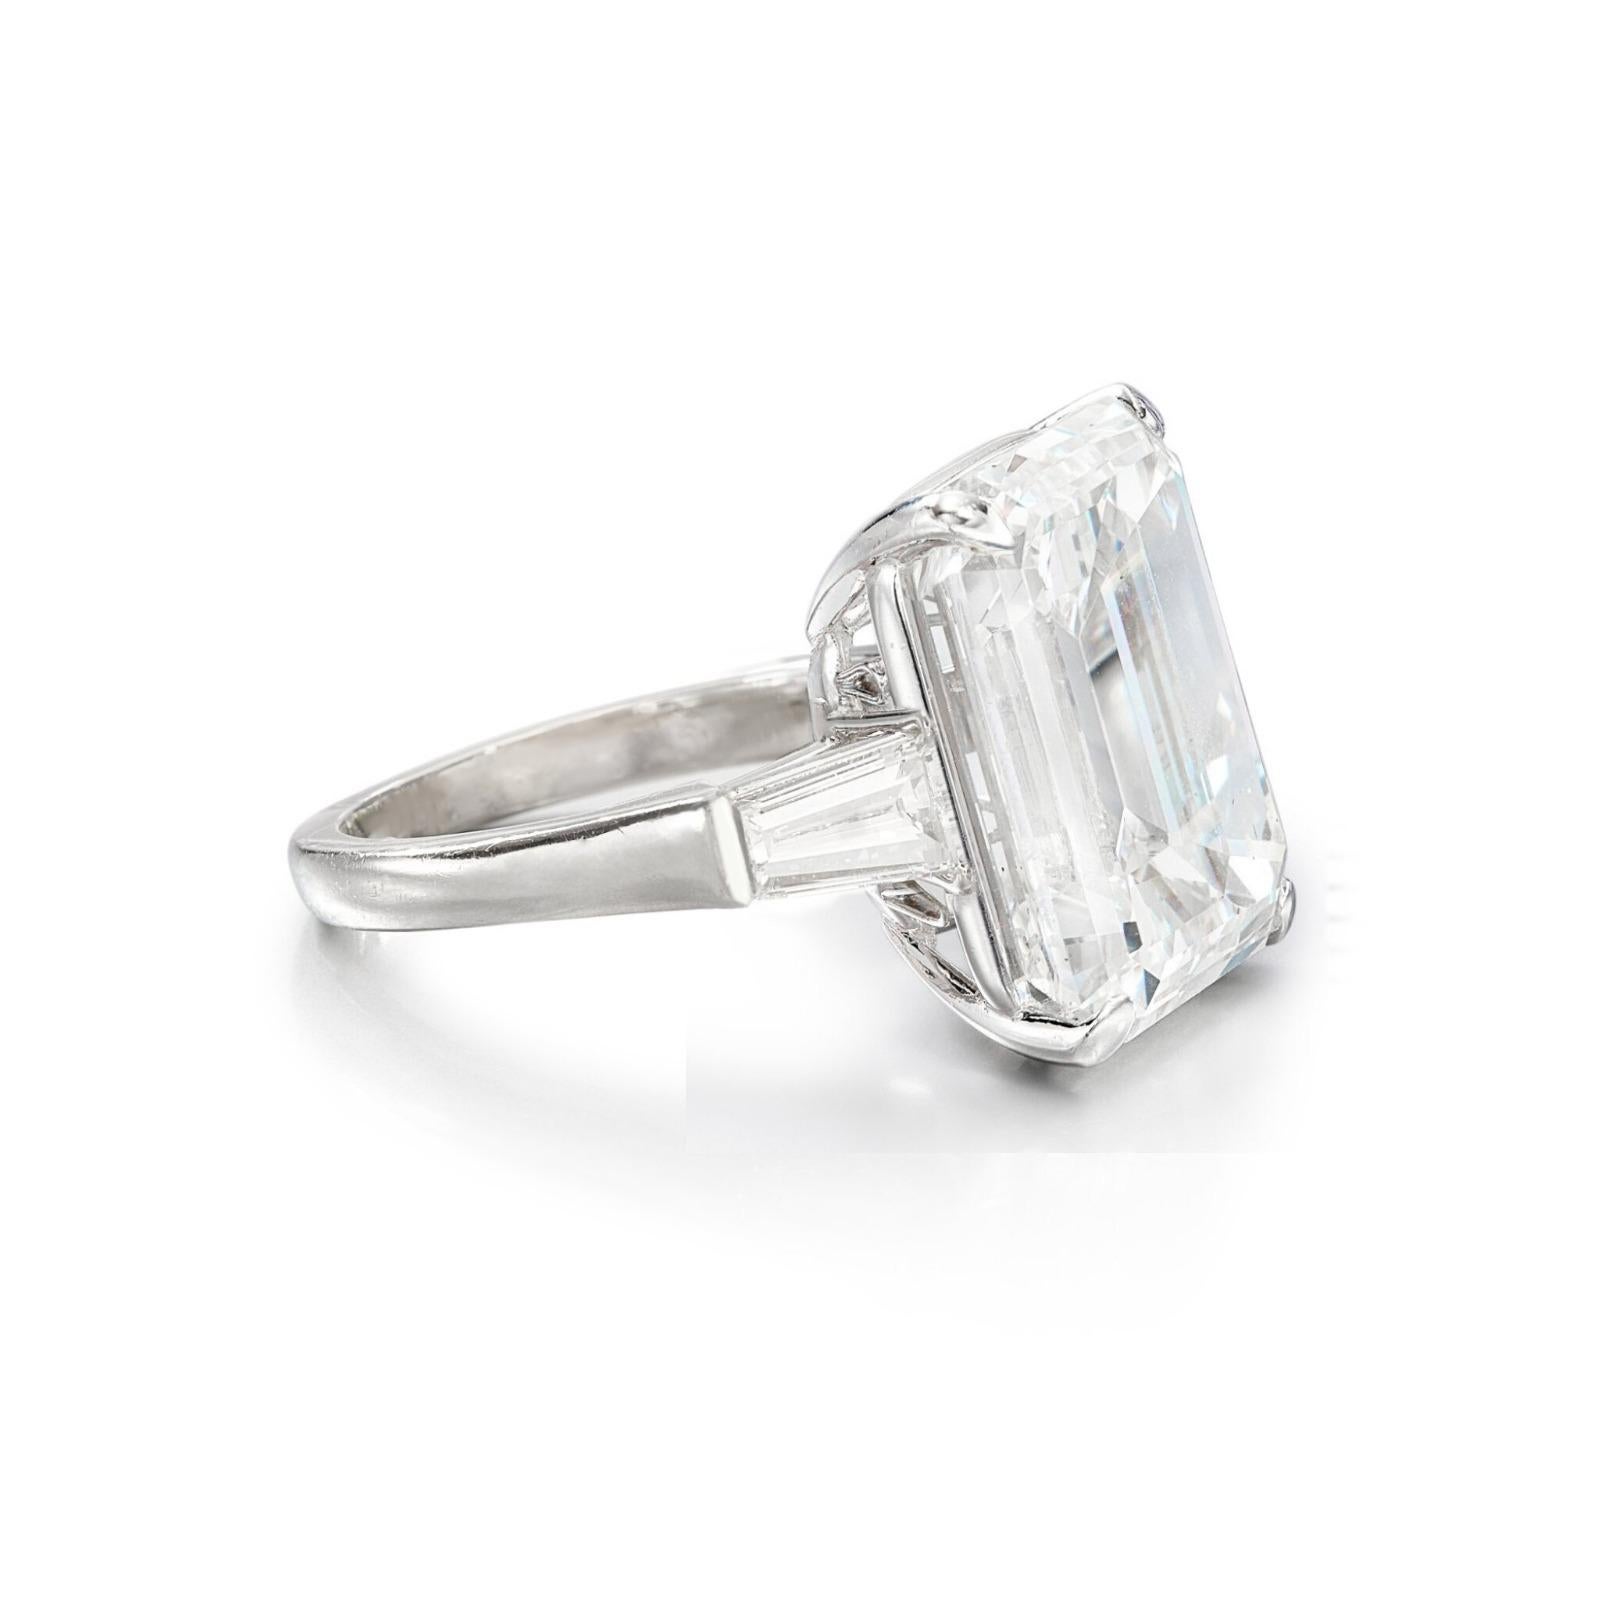 Cette bague exquise est ornée d'un magnifique diamant taille émeraude de 10 carats, certifié par le célèbre Gemological Institute of America (GIA). D'une couleur F et d'une pureté VS1, cette pierre étonnante exsude une brillance et une pureté